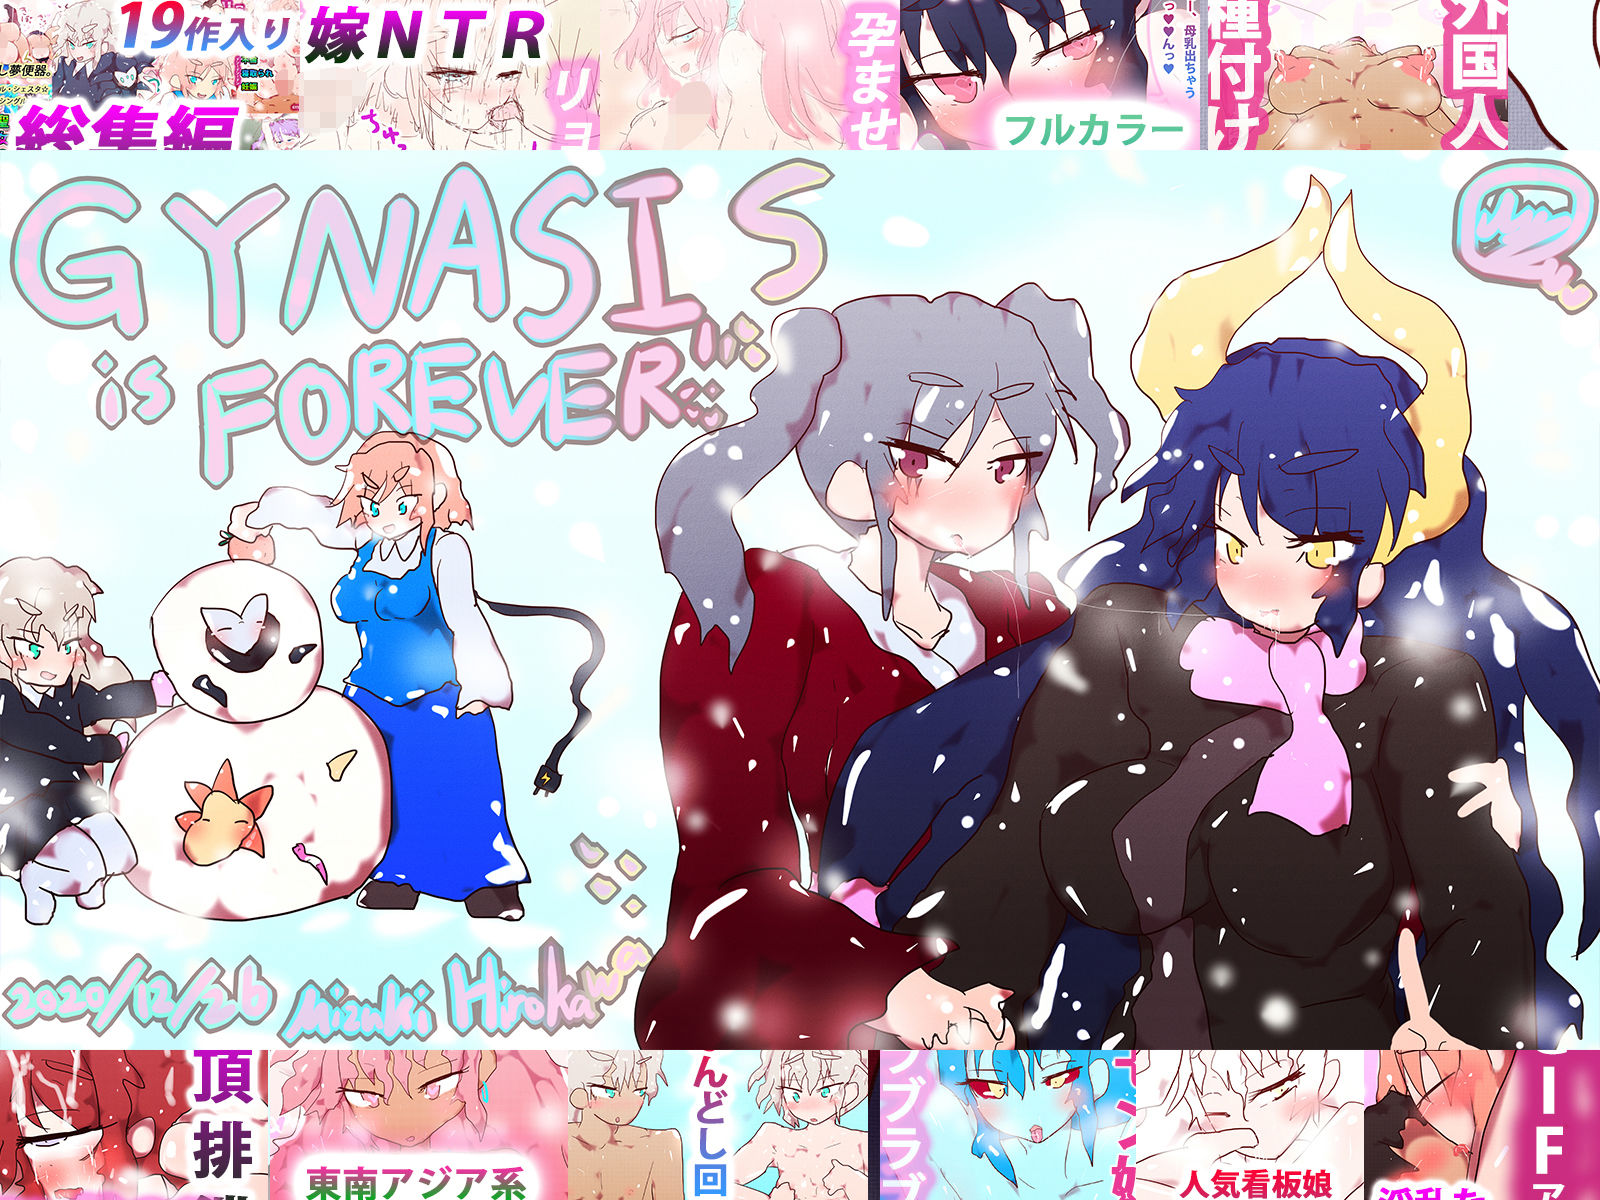 ジナンドロモーフ・シスターズ〜GYNASIS is FOREVER〜10